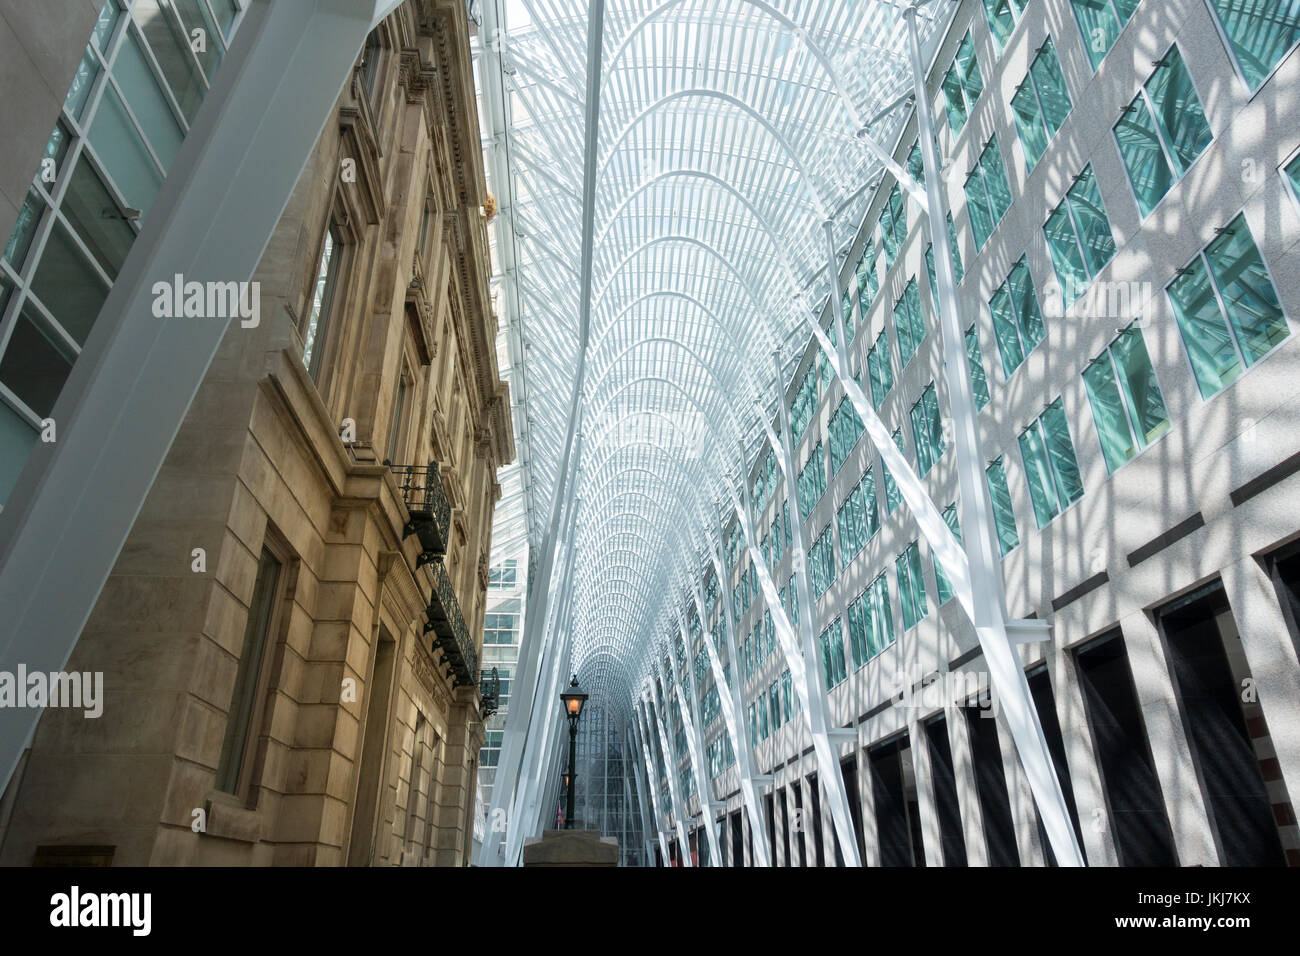 La luce drammatica interno riempito di Brookfield posto un ufficio e un centro business progettato dall'architetto spagnolo Santiago Calatrava a Toronto Foto Stock